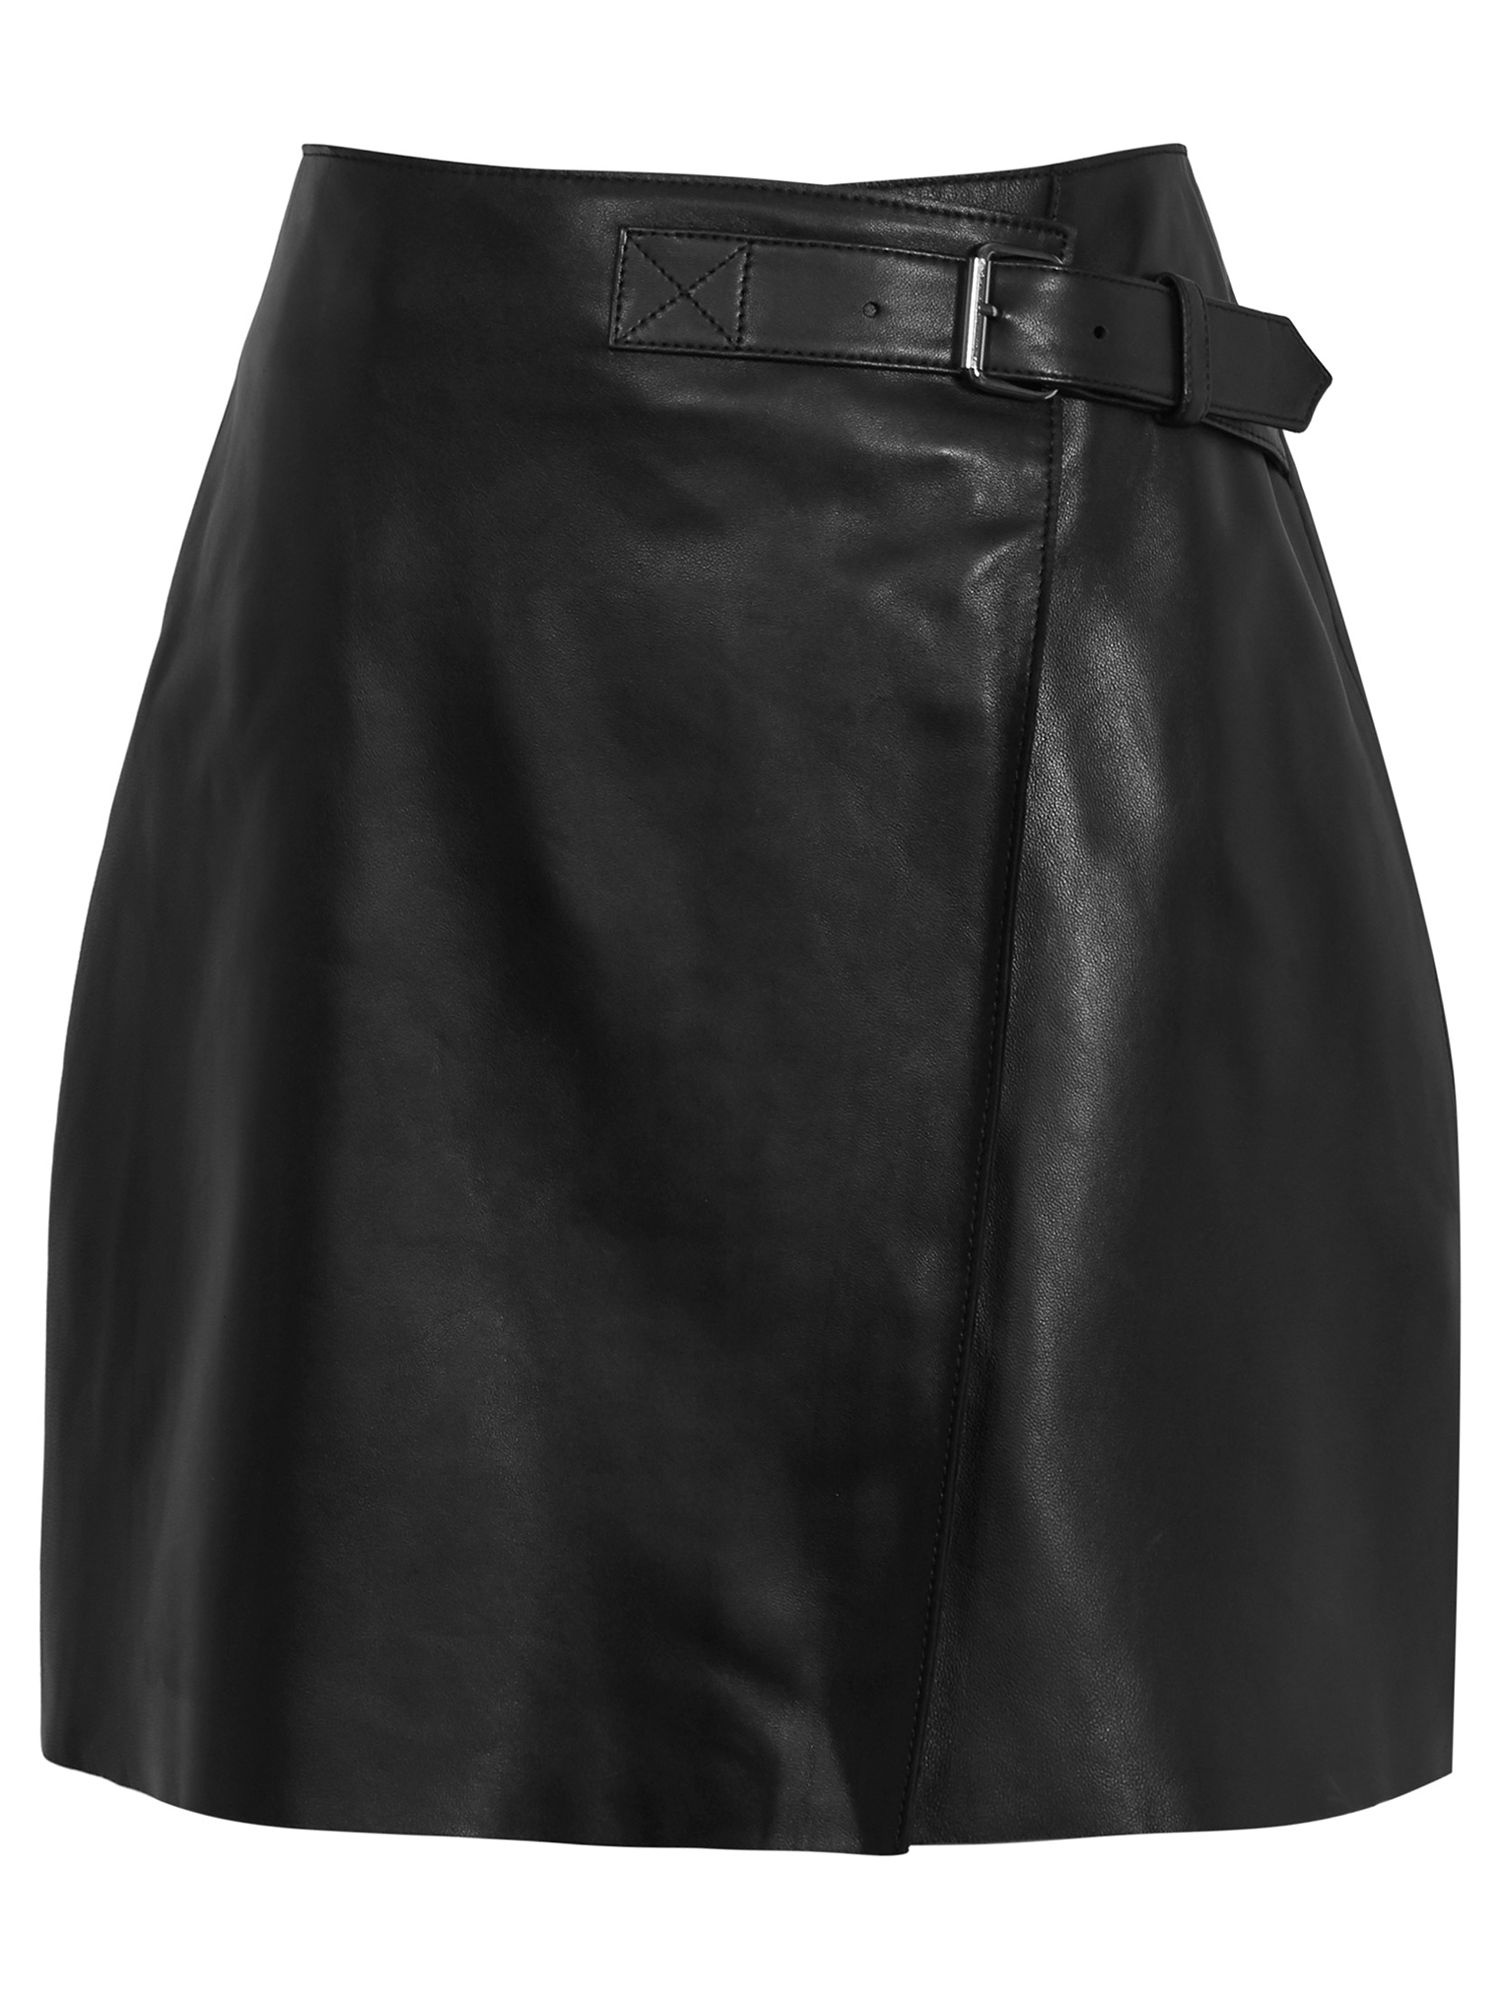 Reiss Ace Hardware Skirt, Black